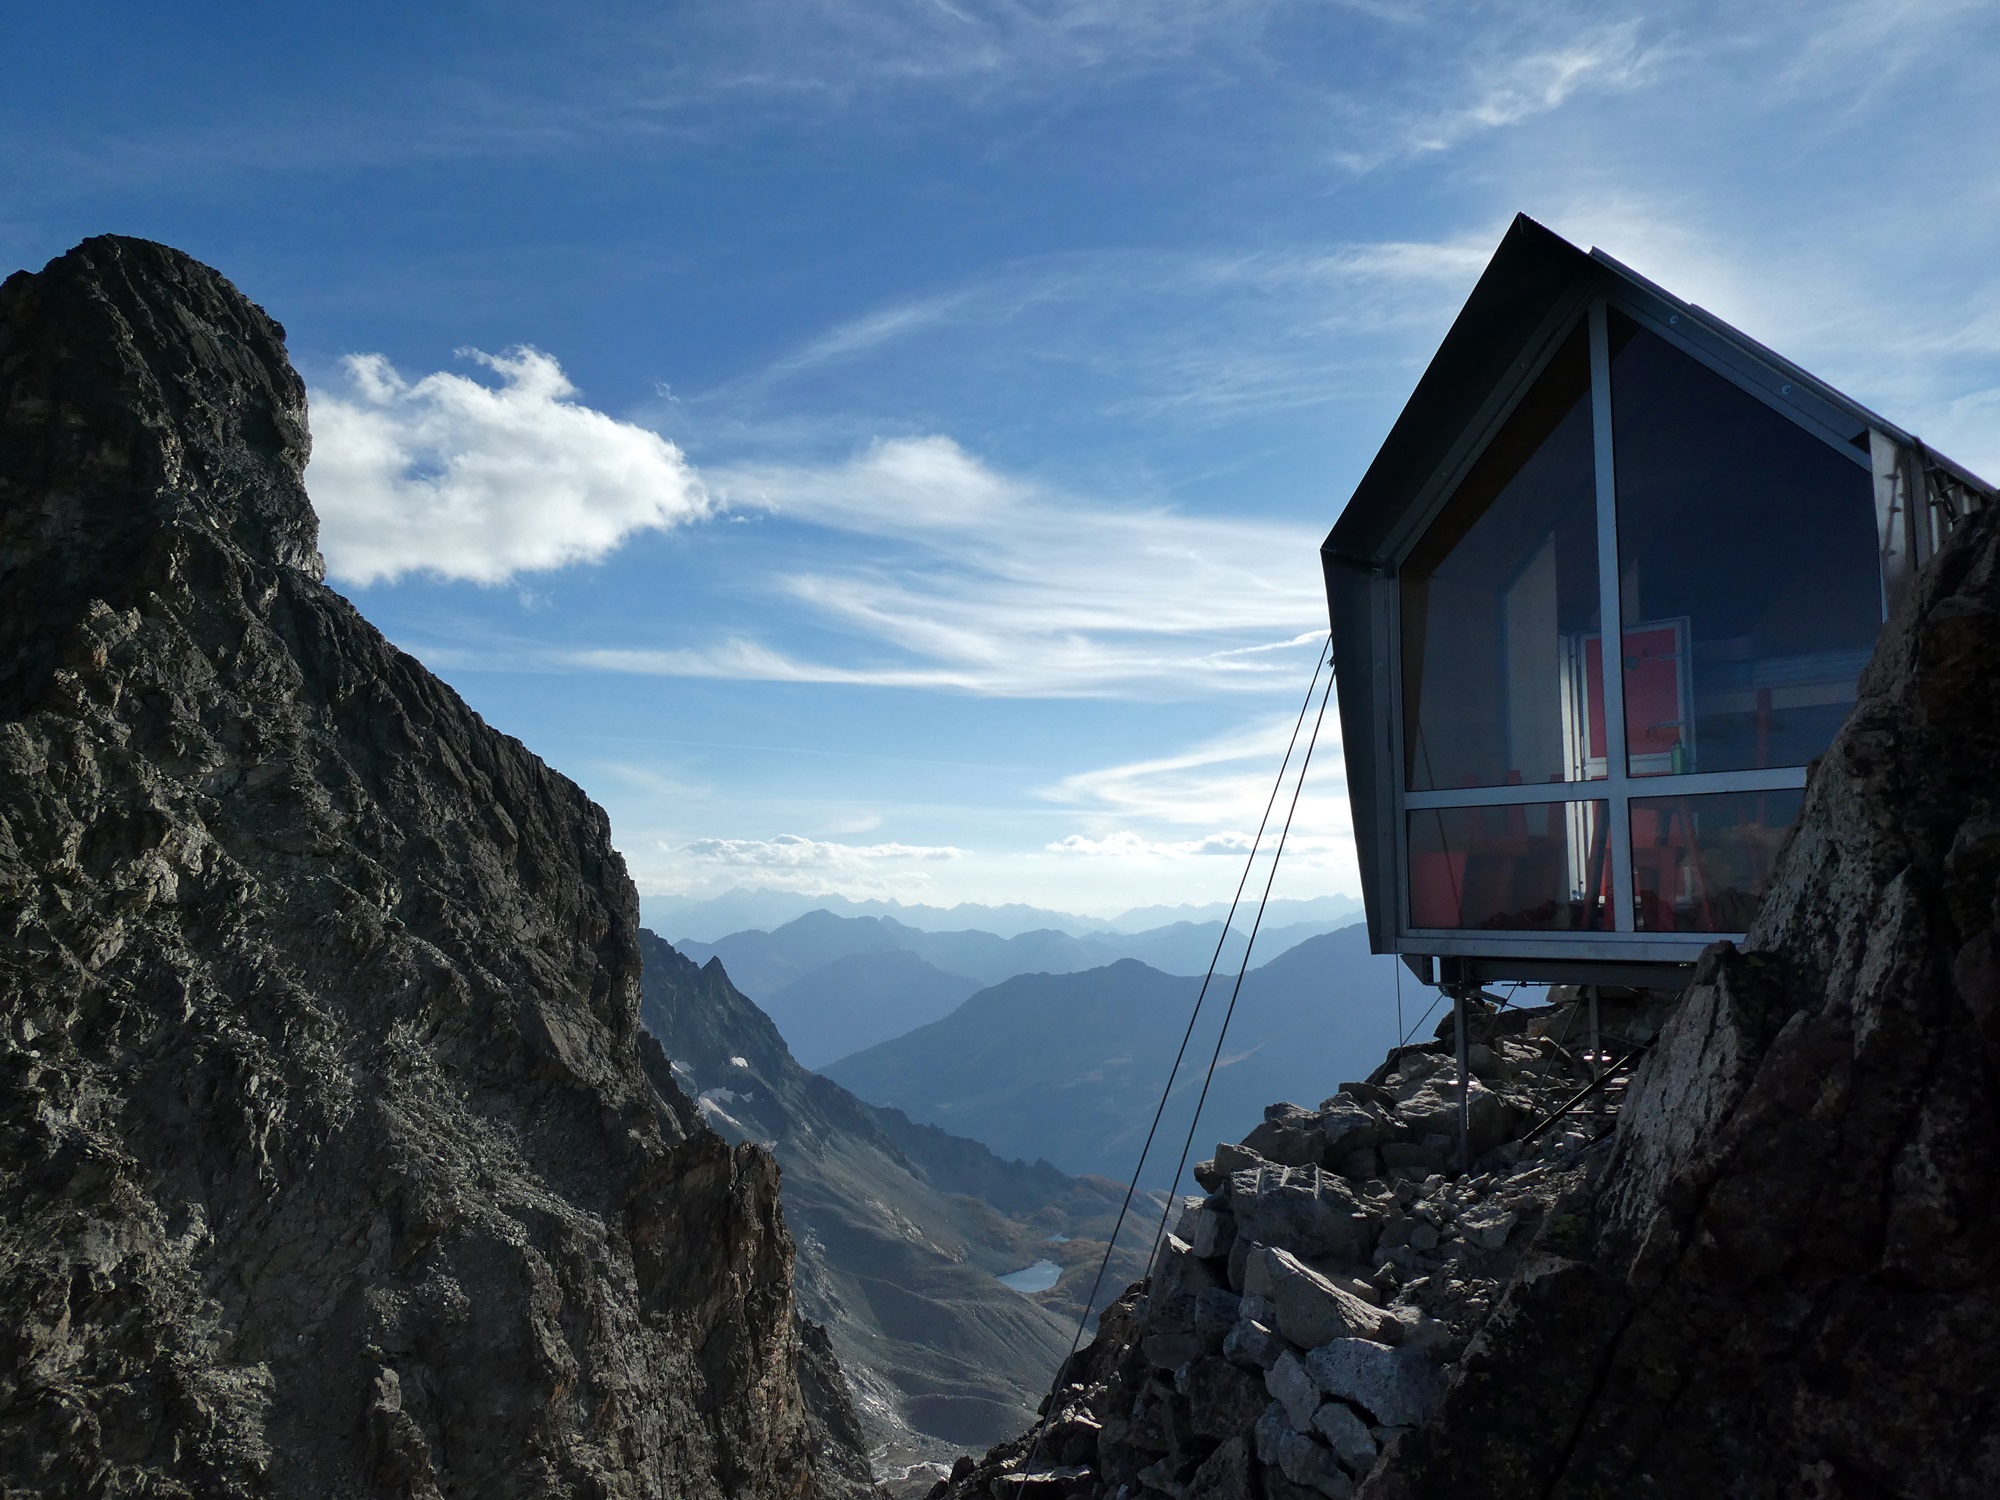 Spektakularne schronisko we włoskich Alpach